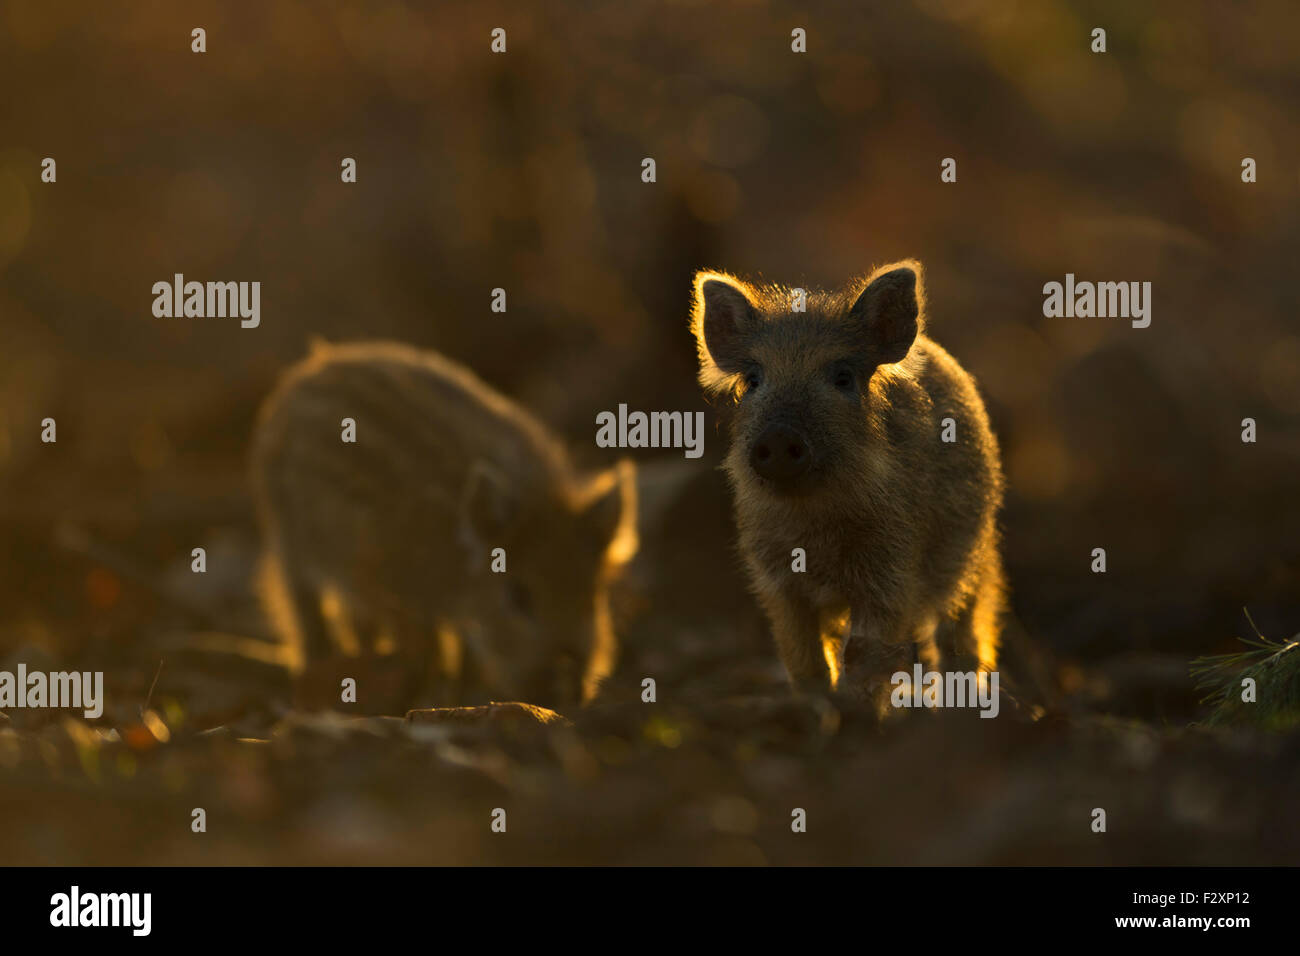 Ferkel des wilden Ebers / wilde Schwein / pig Feral / Wildschwein (Sus Scrofa) auf der Suche nach Nahrung bei Gegenlicht. Stockfoto